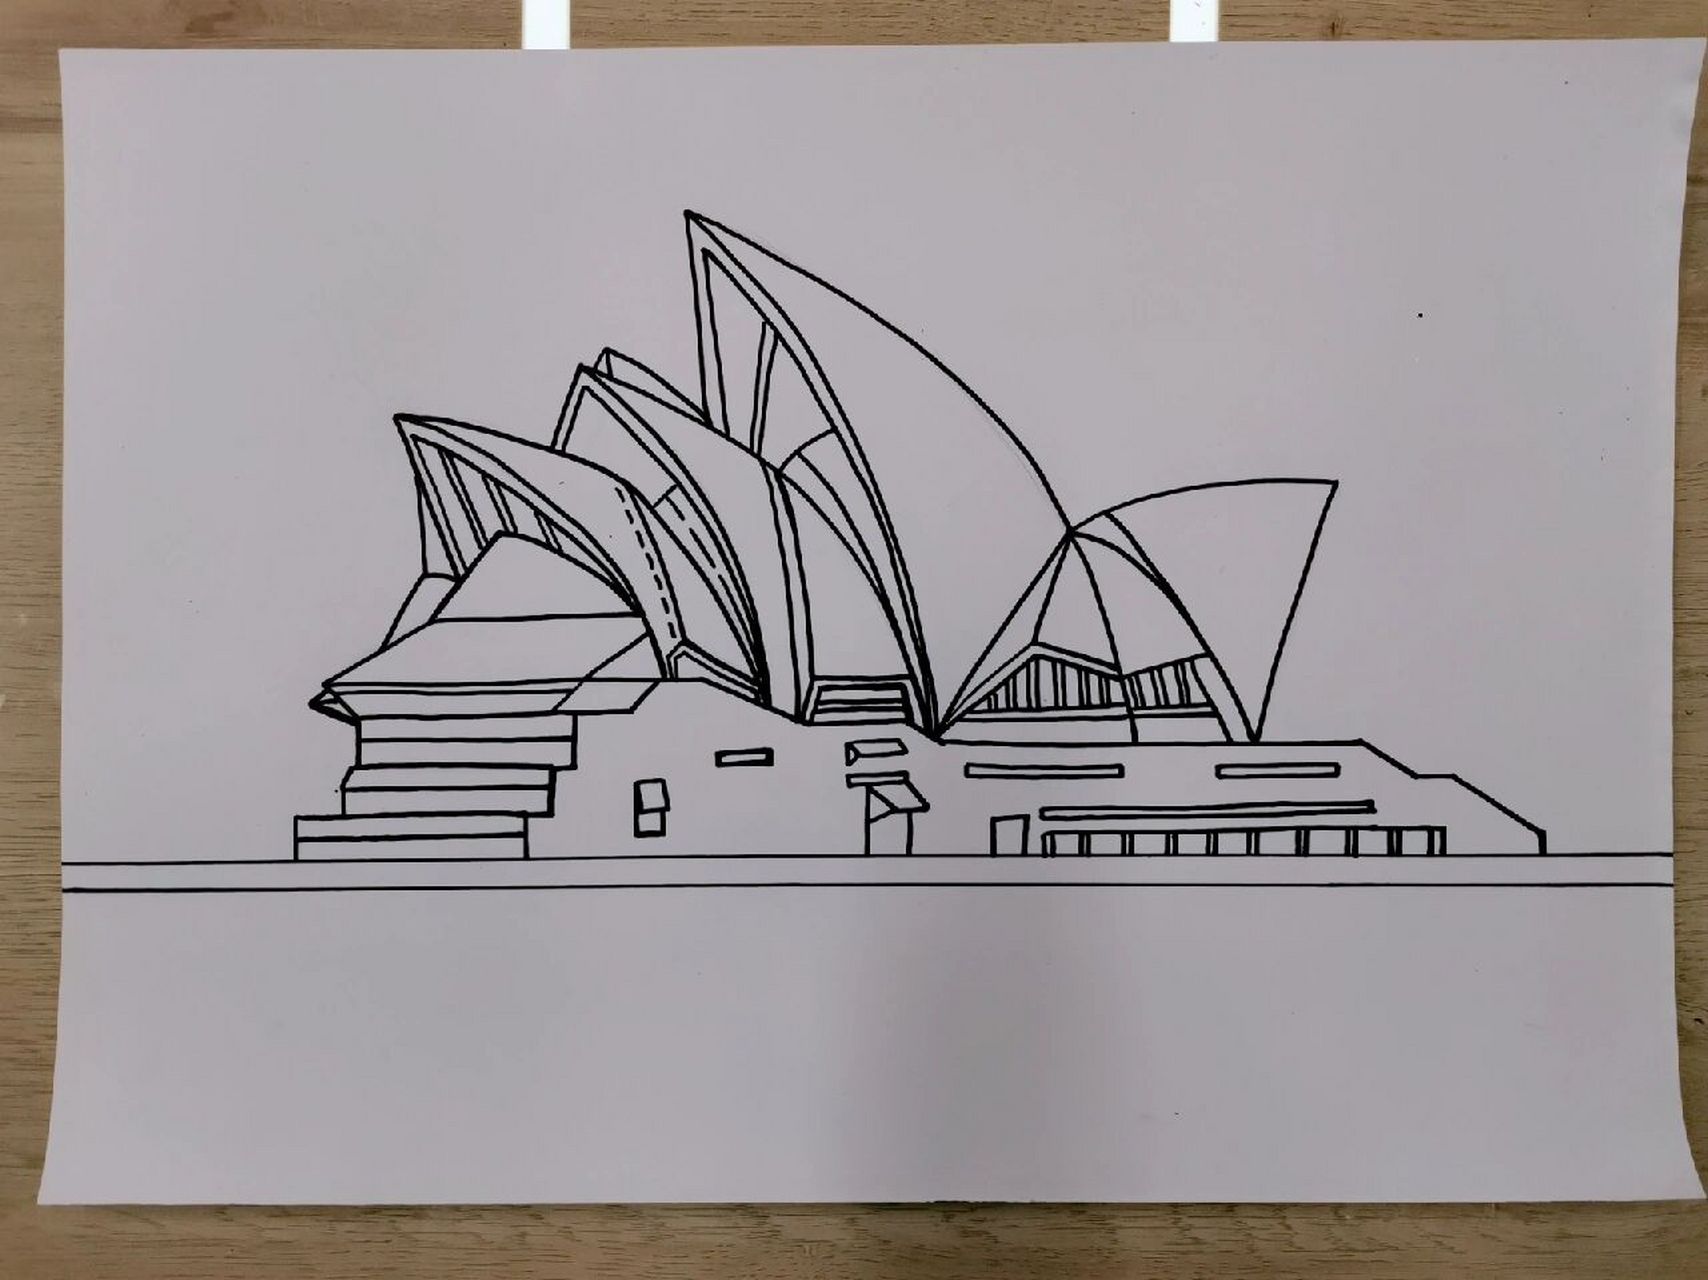 悉尼歌剧院简笔画立体图片